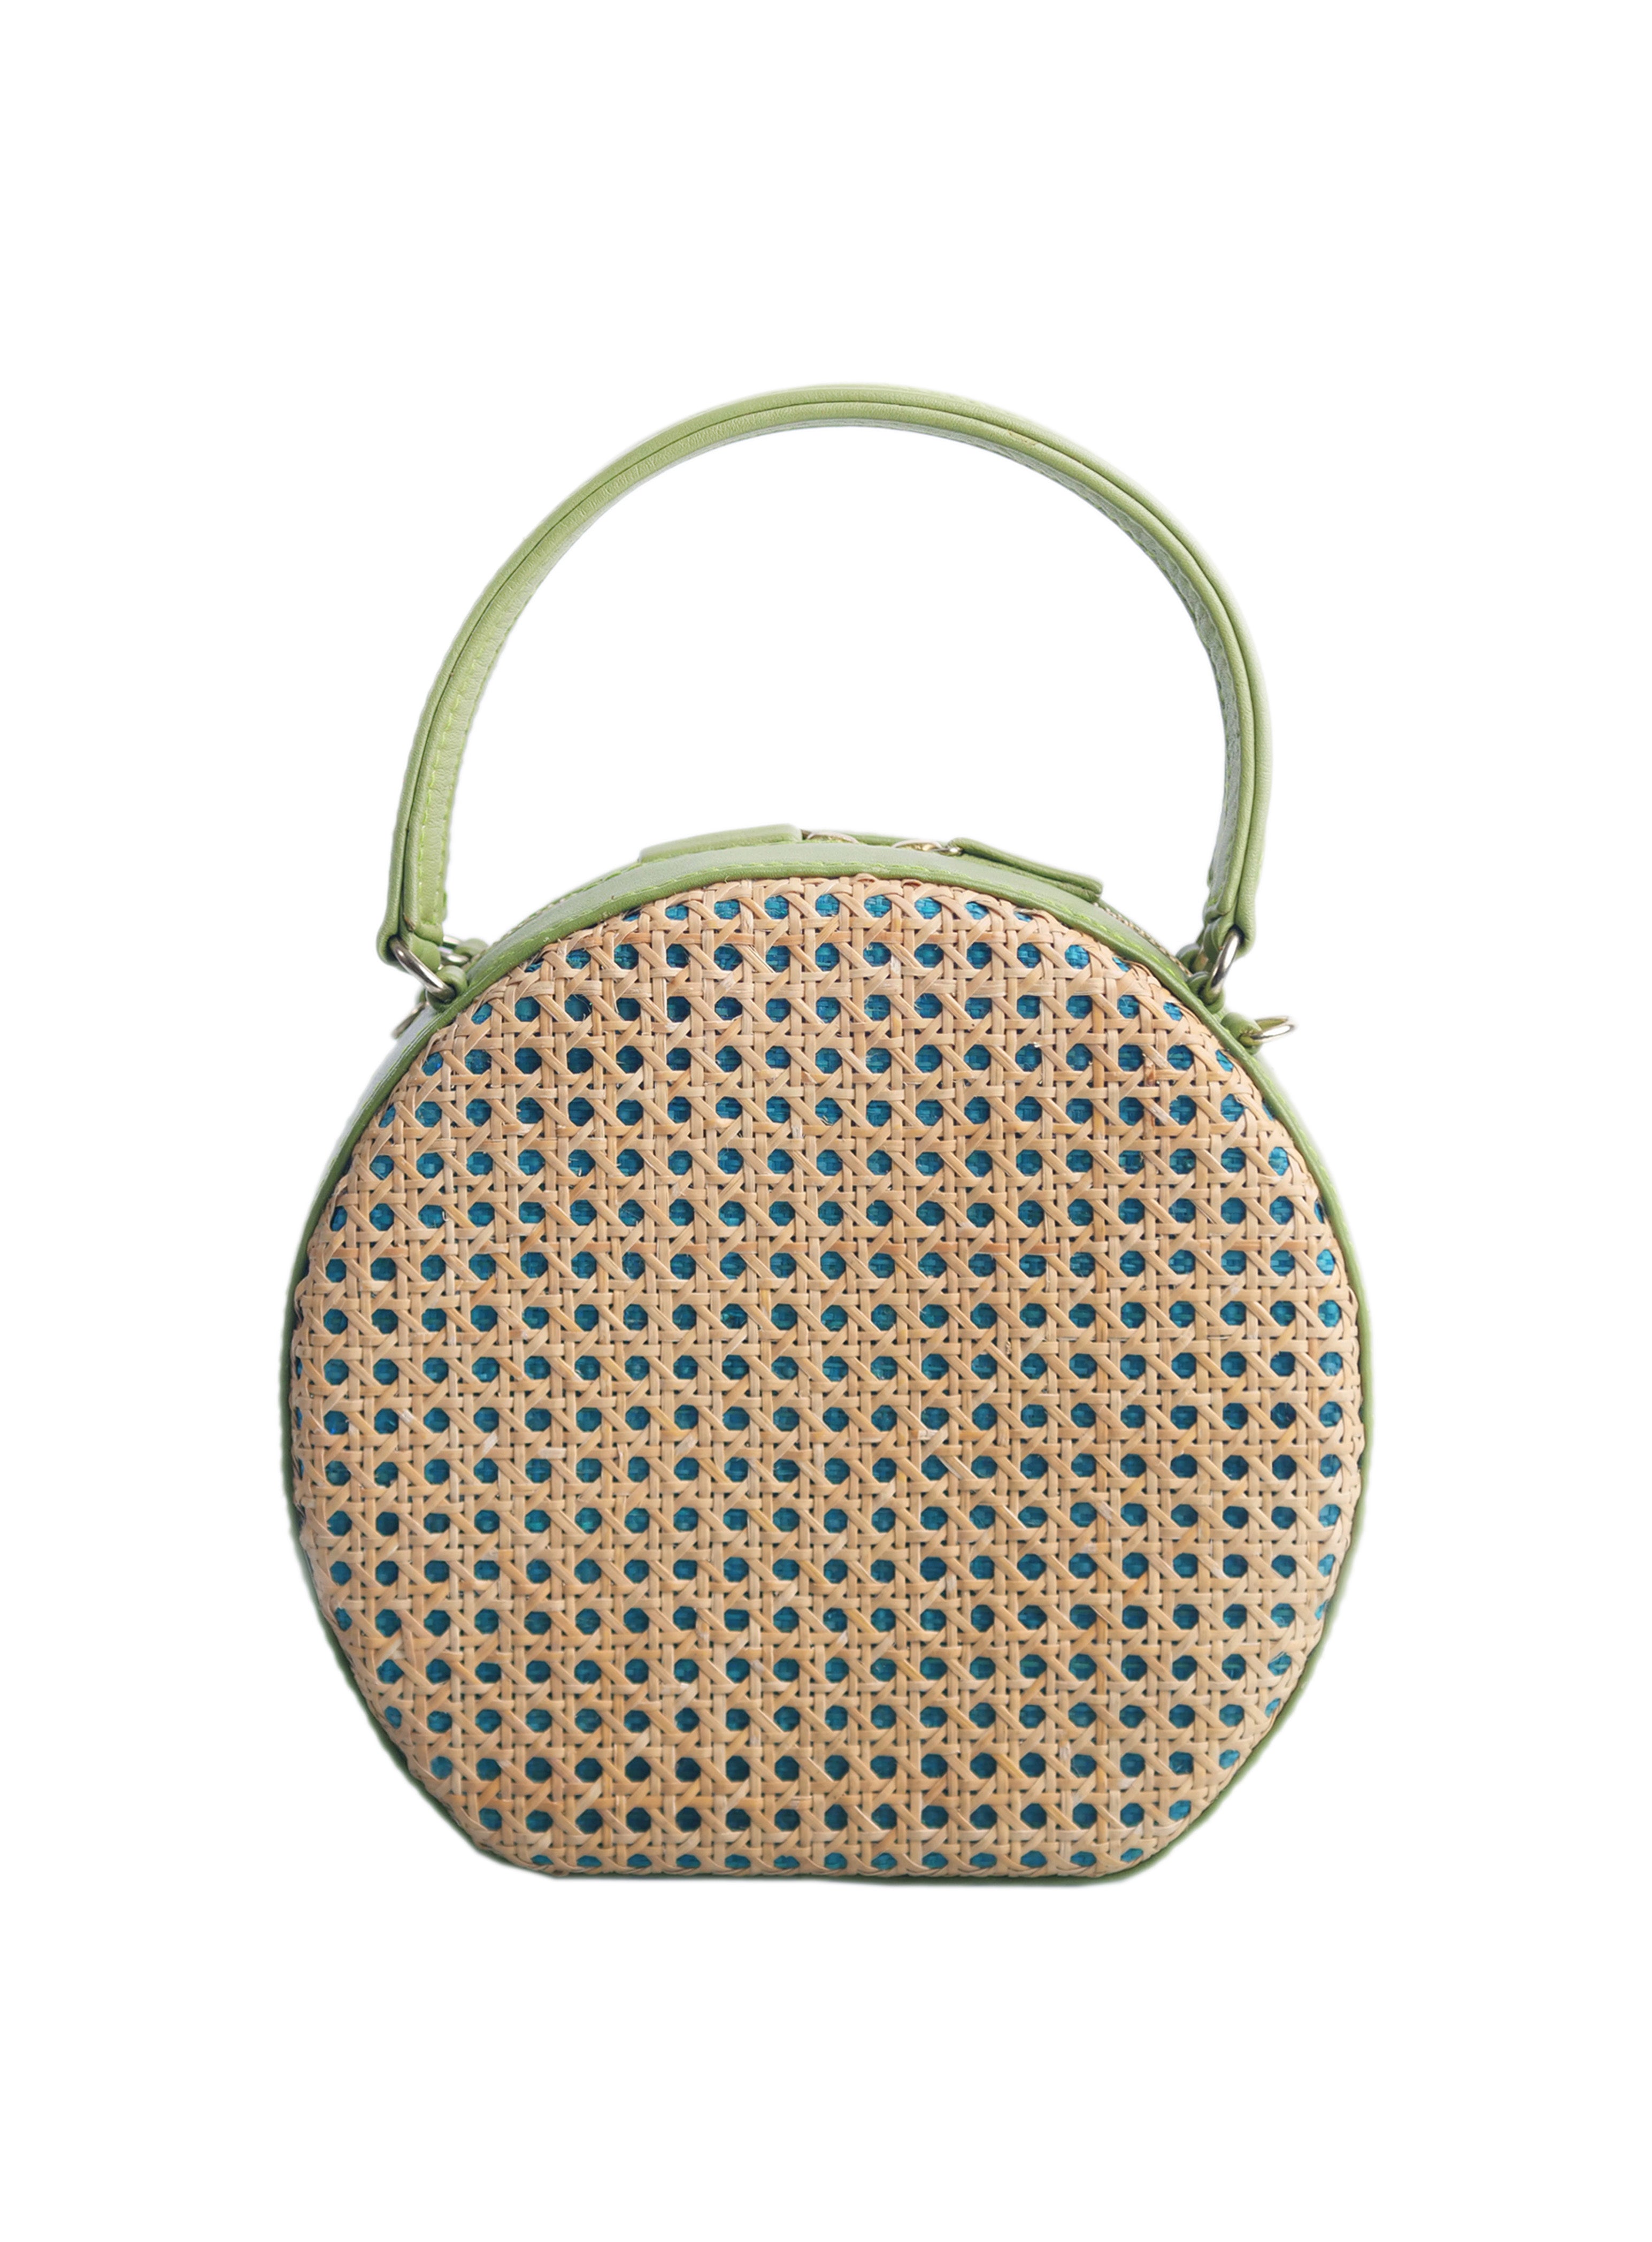 Francesca's purse for summer - Lemon8 Search